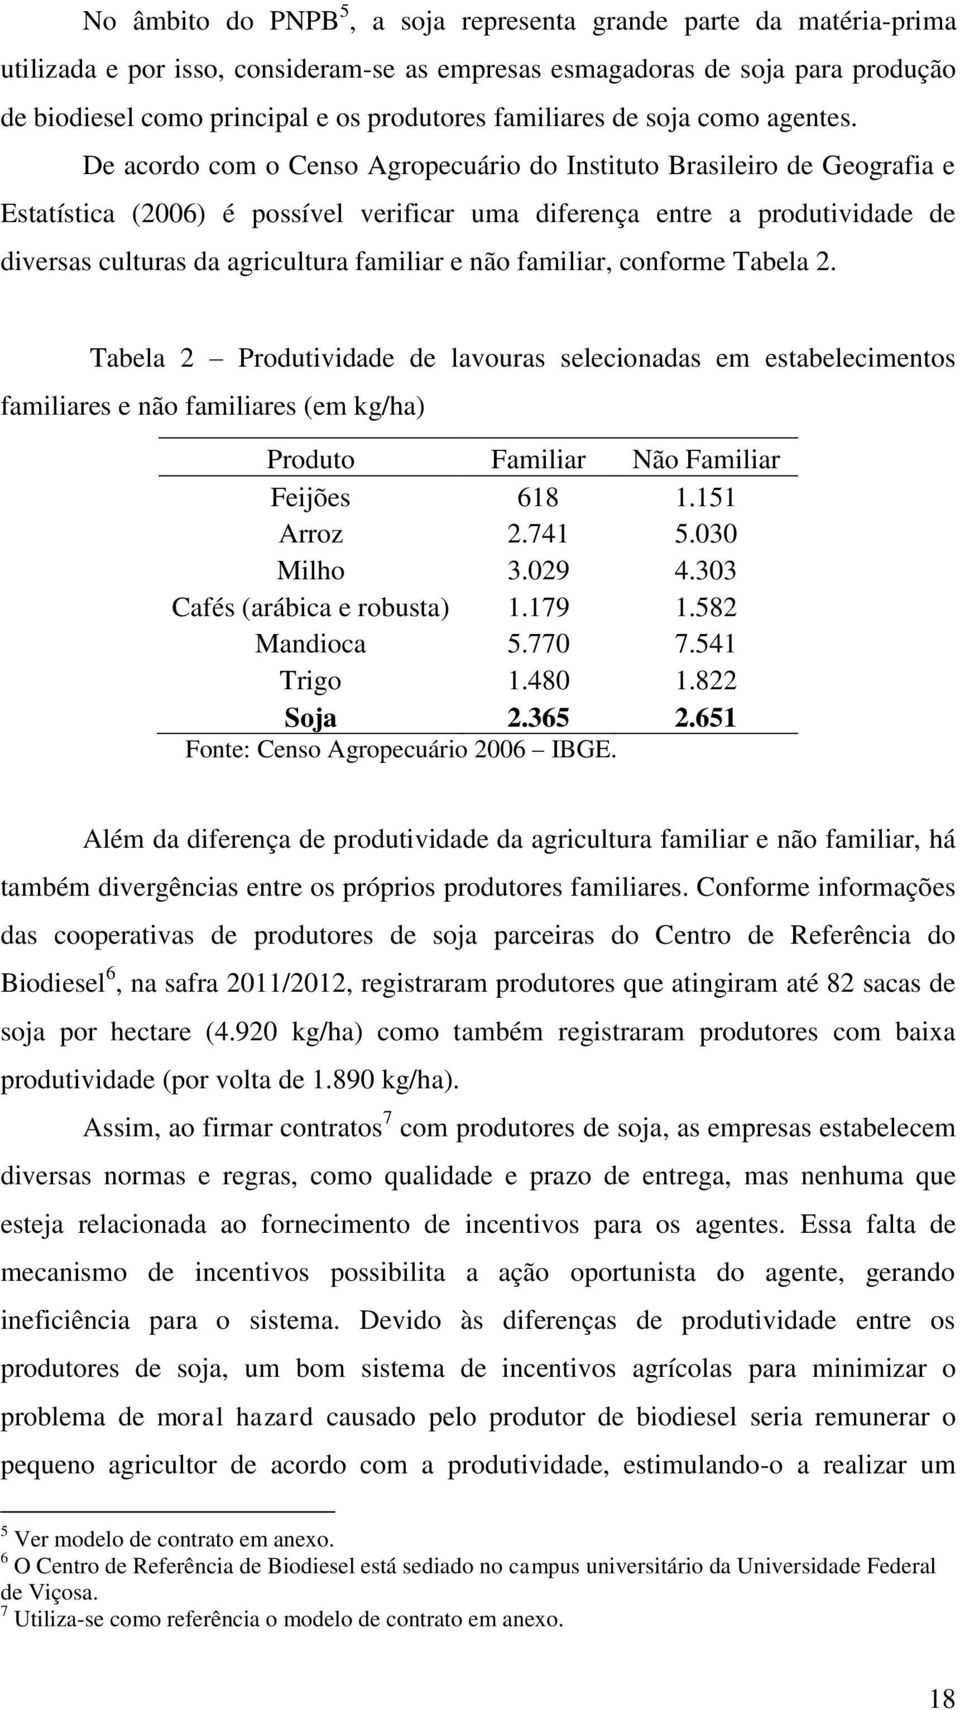 De acordo com o Censo Agropecuário do Instituto Brasileiro de Geografia e Estatística (2006) é possível verificar uma diferença entre a produtividade de diversas culturas da agricultura familiar e